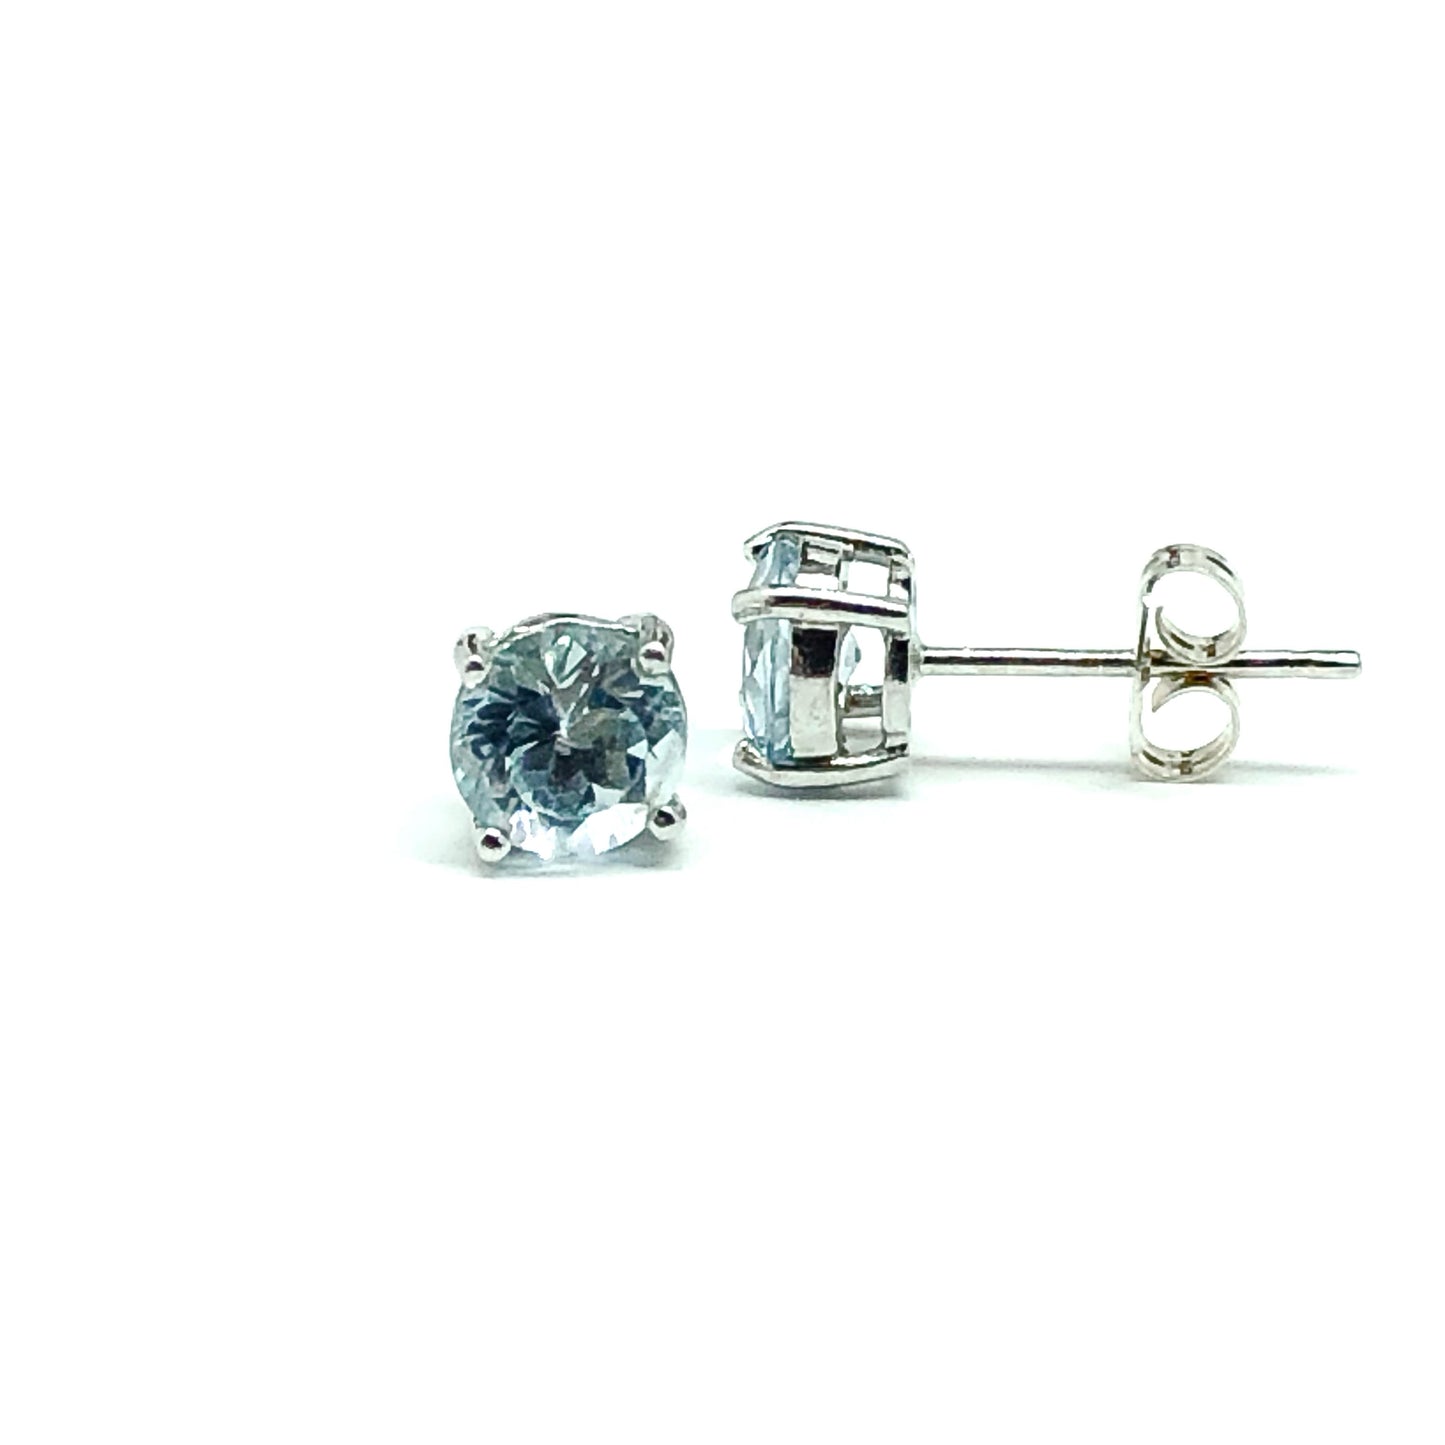 Jewelry - Unisex Sterling Silver December Light Blue Topaz Gemstone Stud Earrings